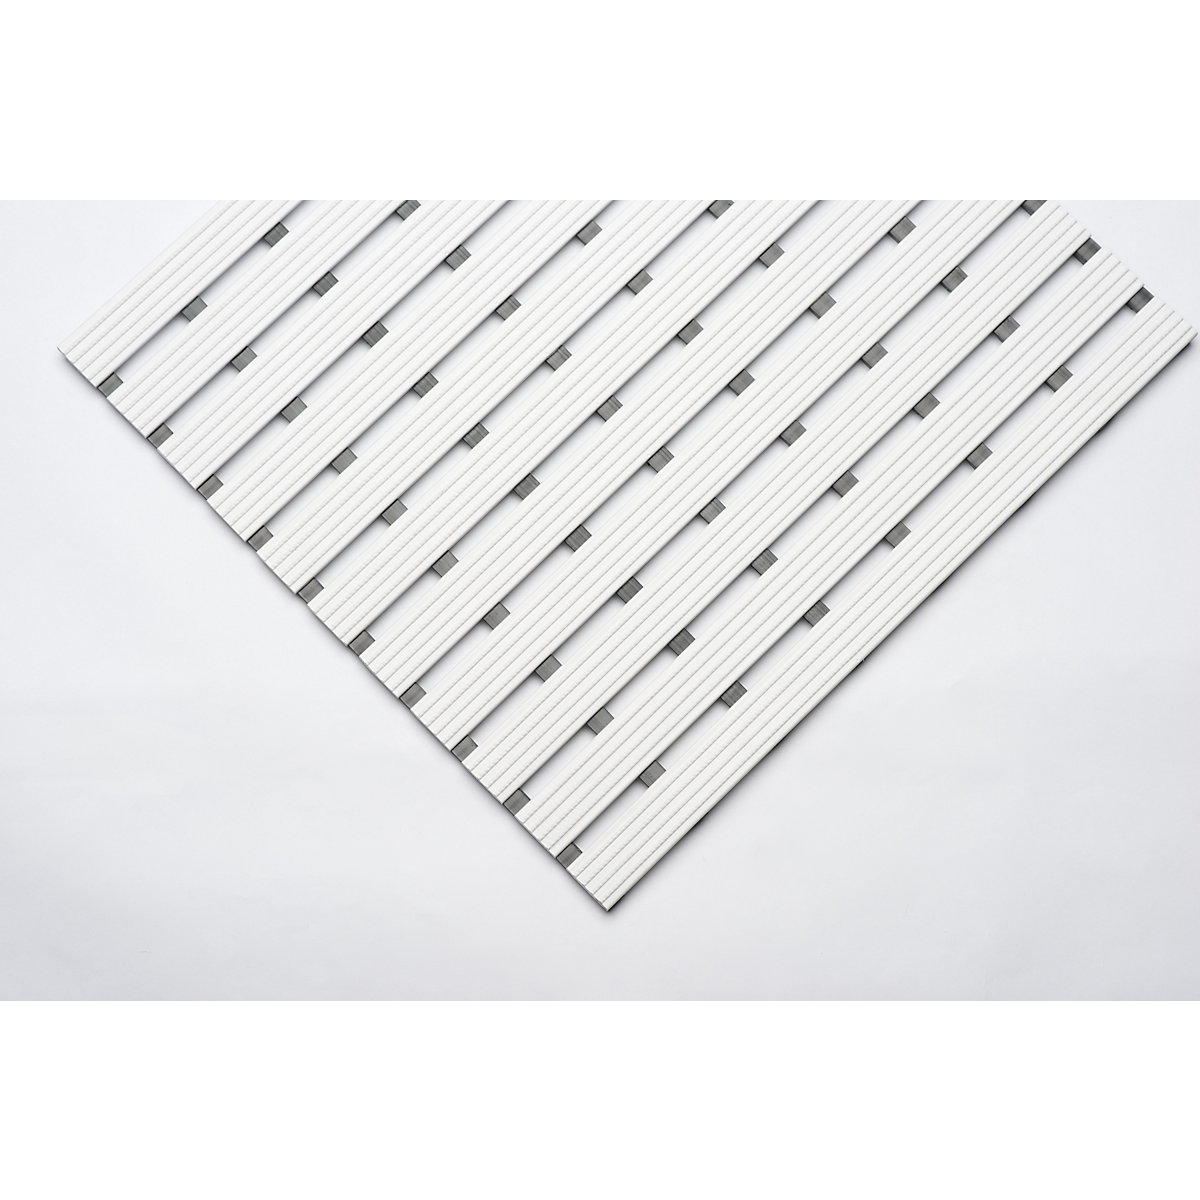 PVC-Profilmatte, pro lfd. m, Lauffläche aus Hart-PVC, rutschsicher, Breite 600 mm, weiß-11